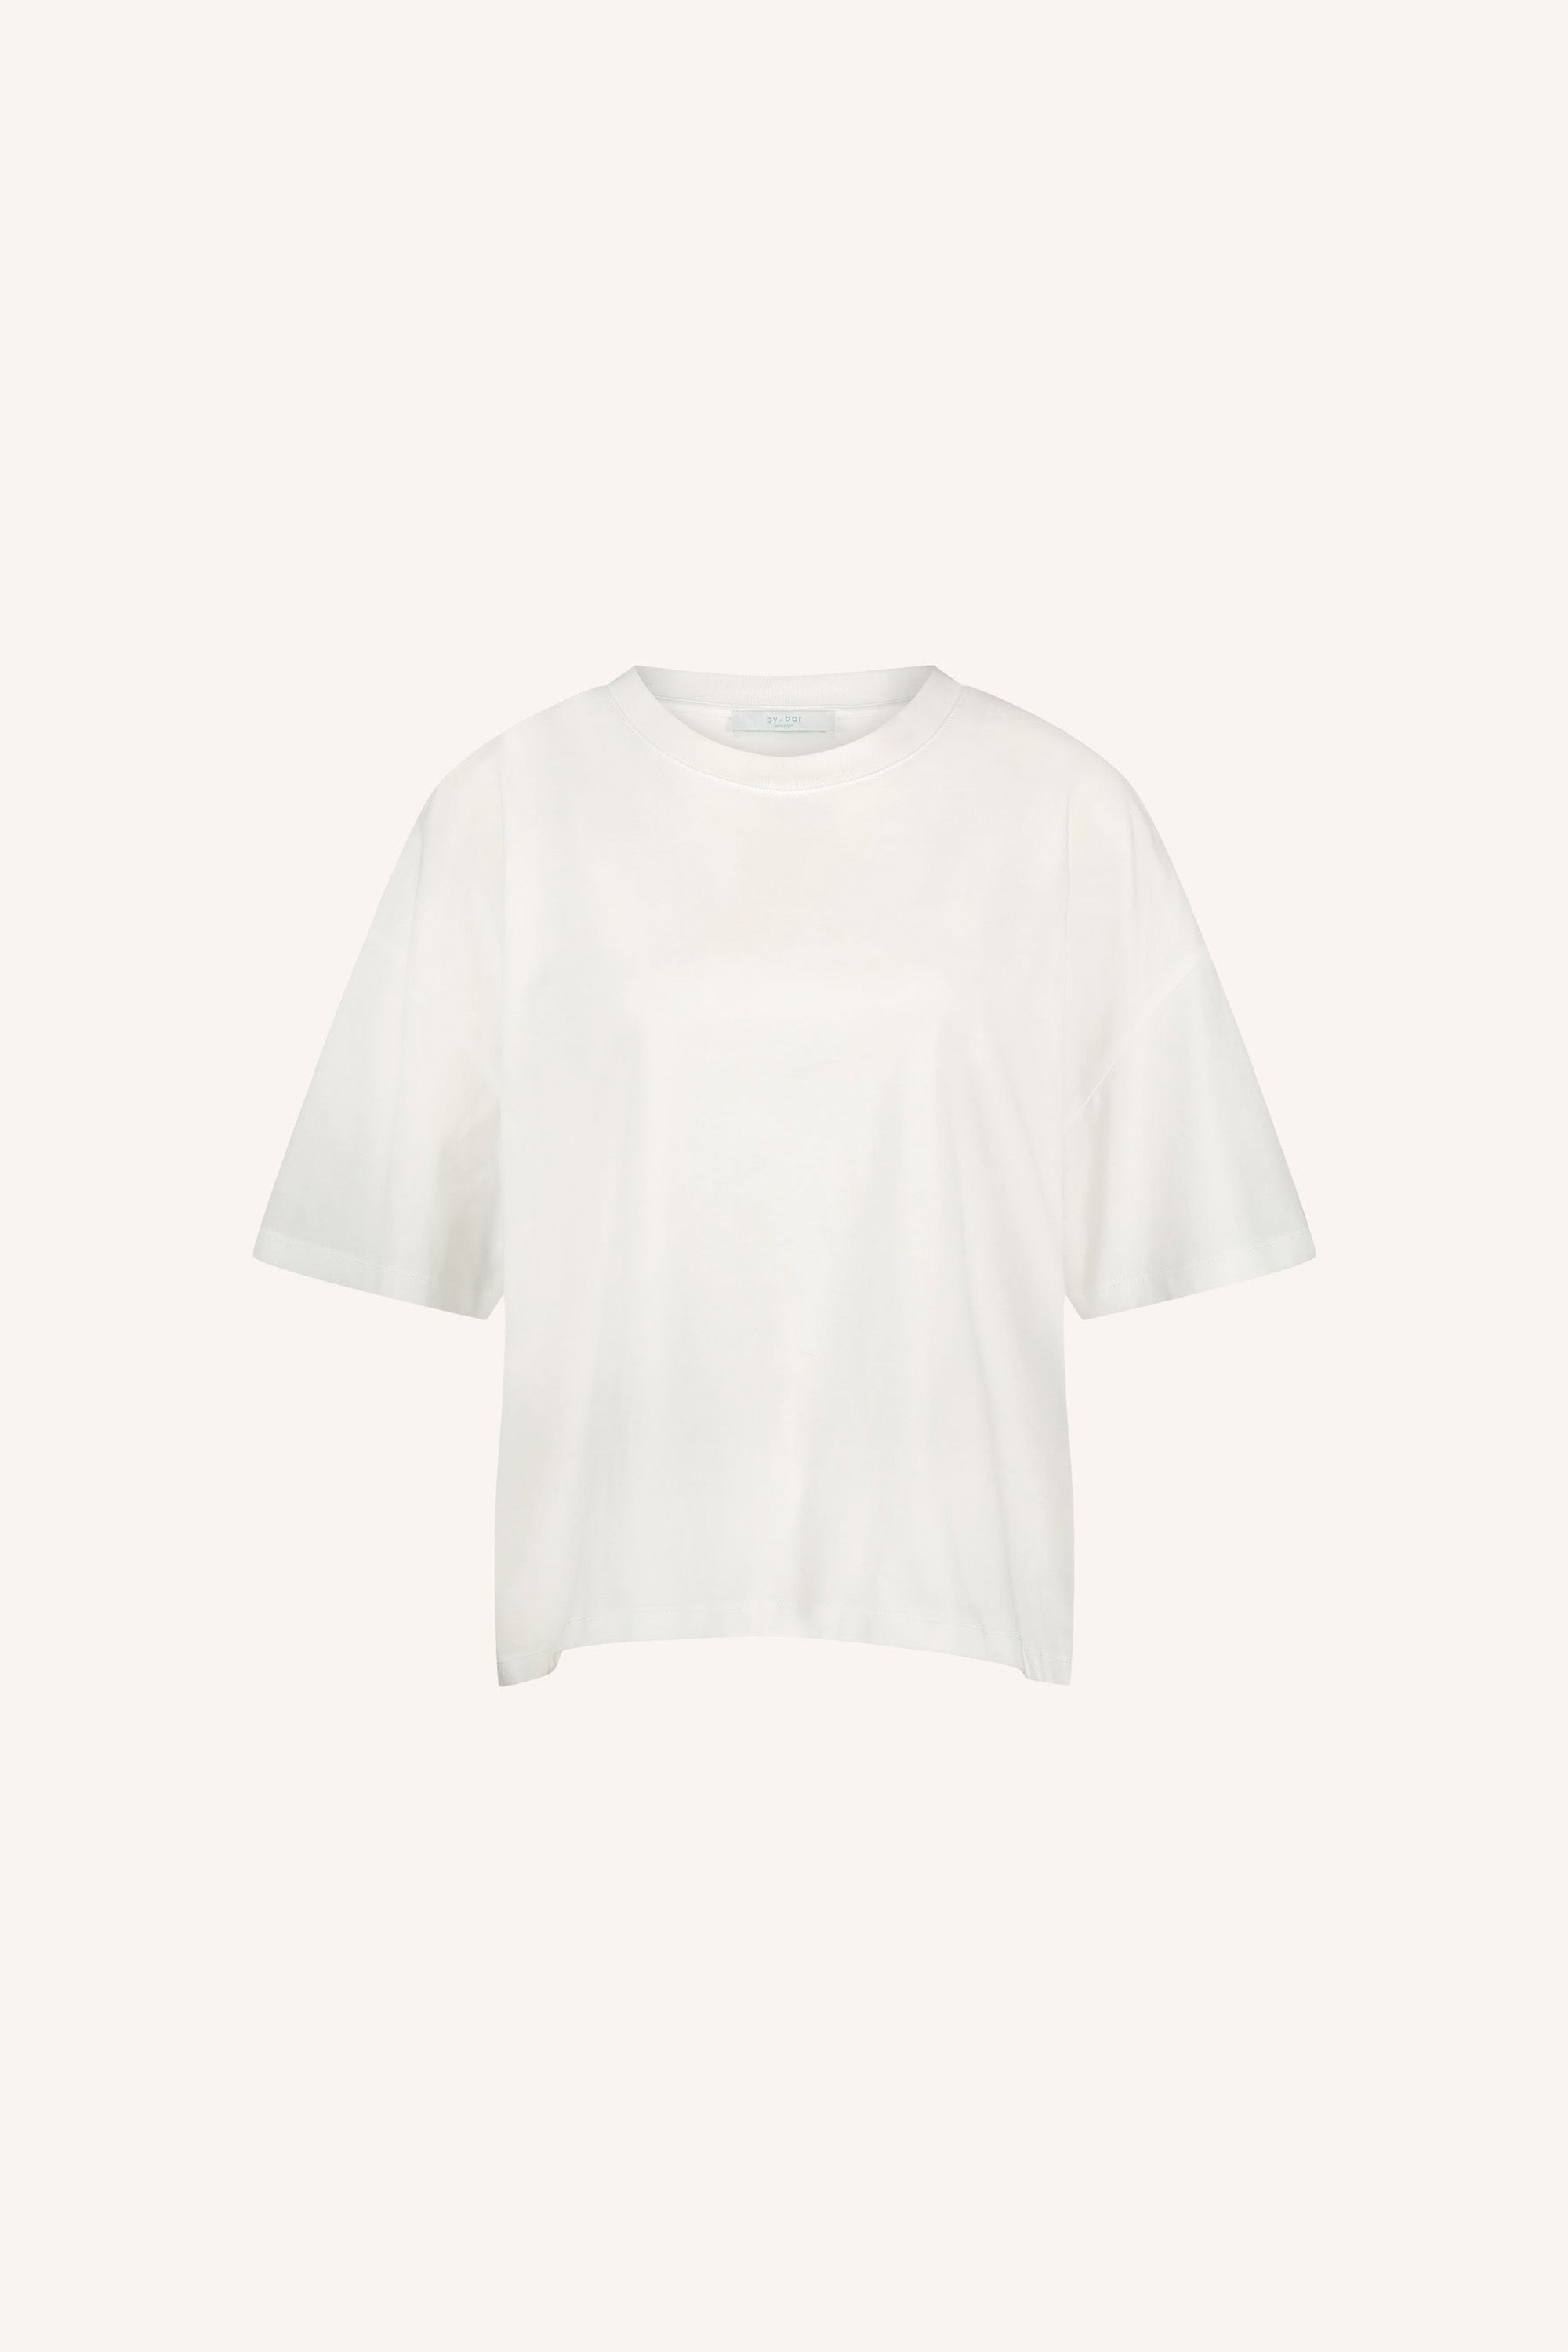 jade t shirt | white